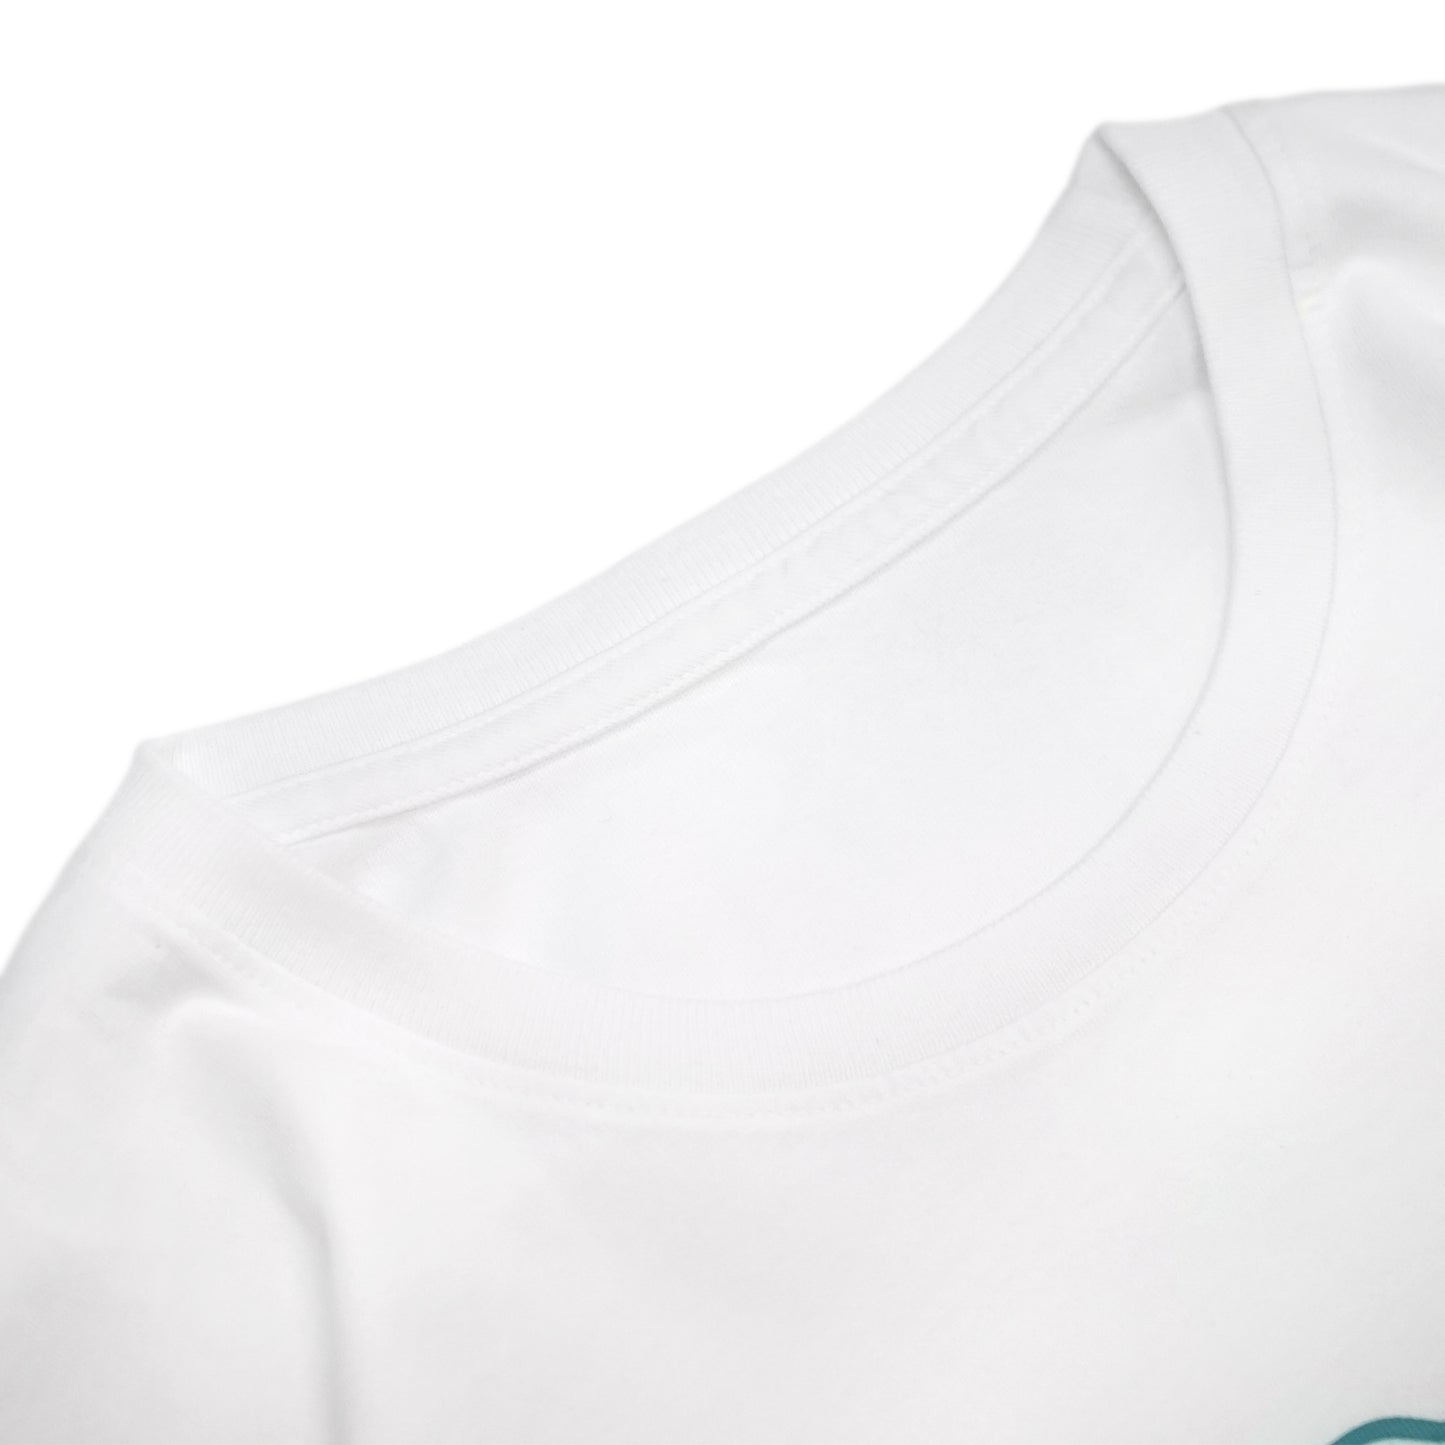 PUBLIC IMPRESSION - Purifier T-Shirt/White